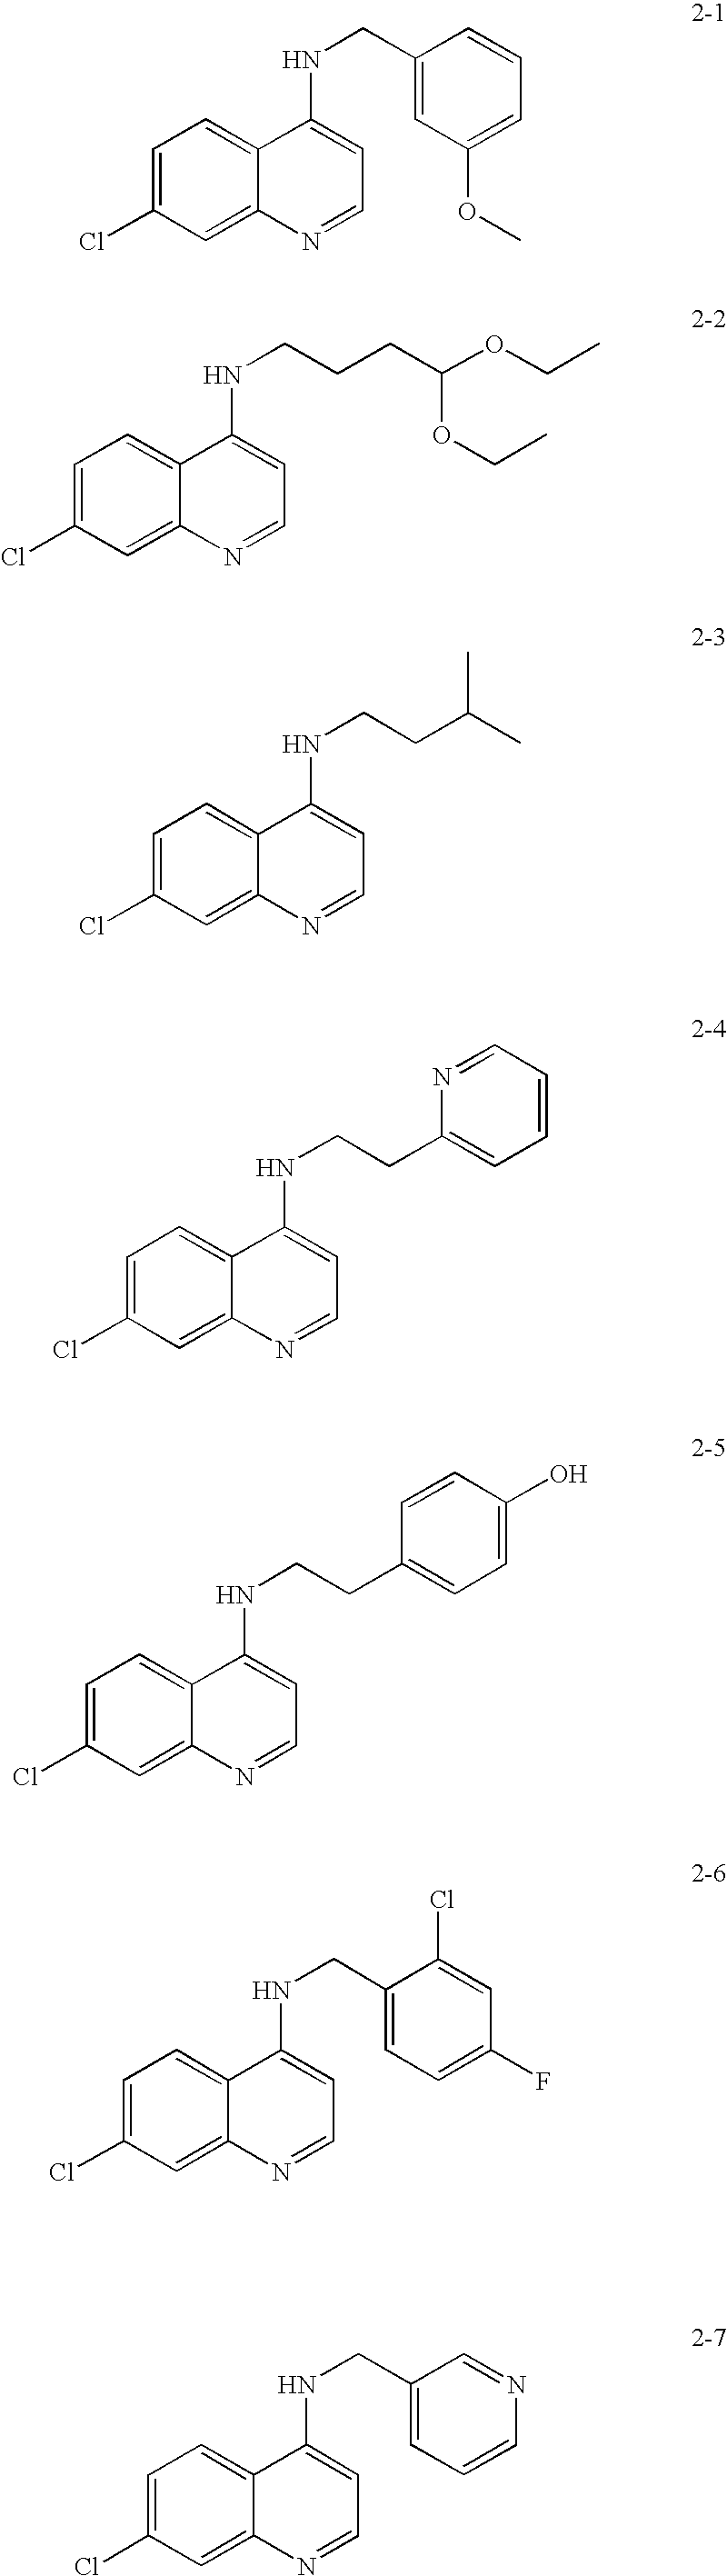 Substituted quinoline and quinazoline inhibitors of quinone reductase 2